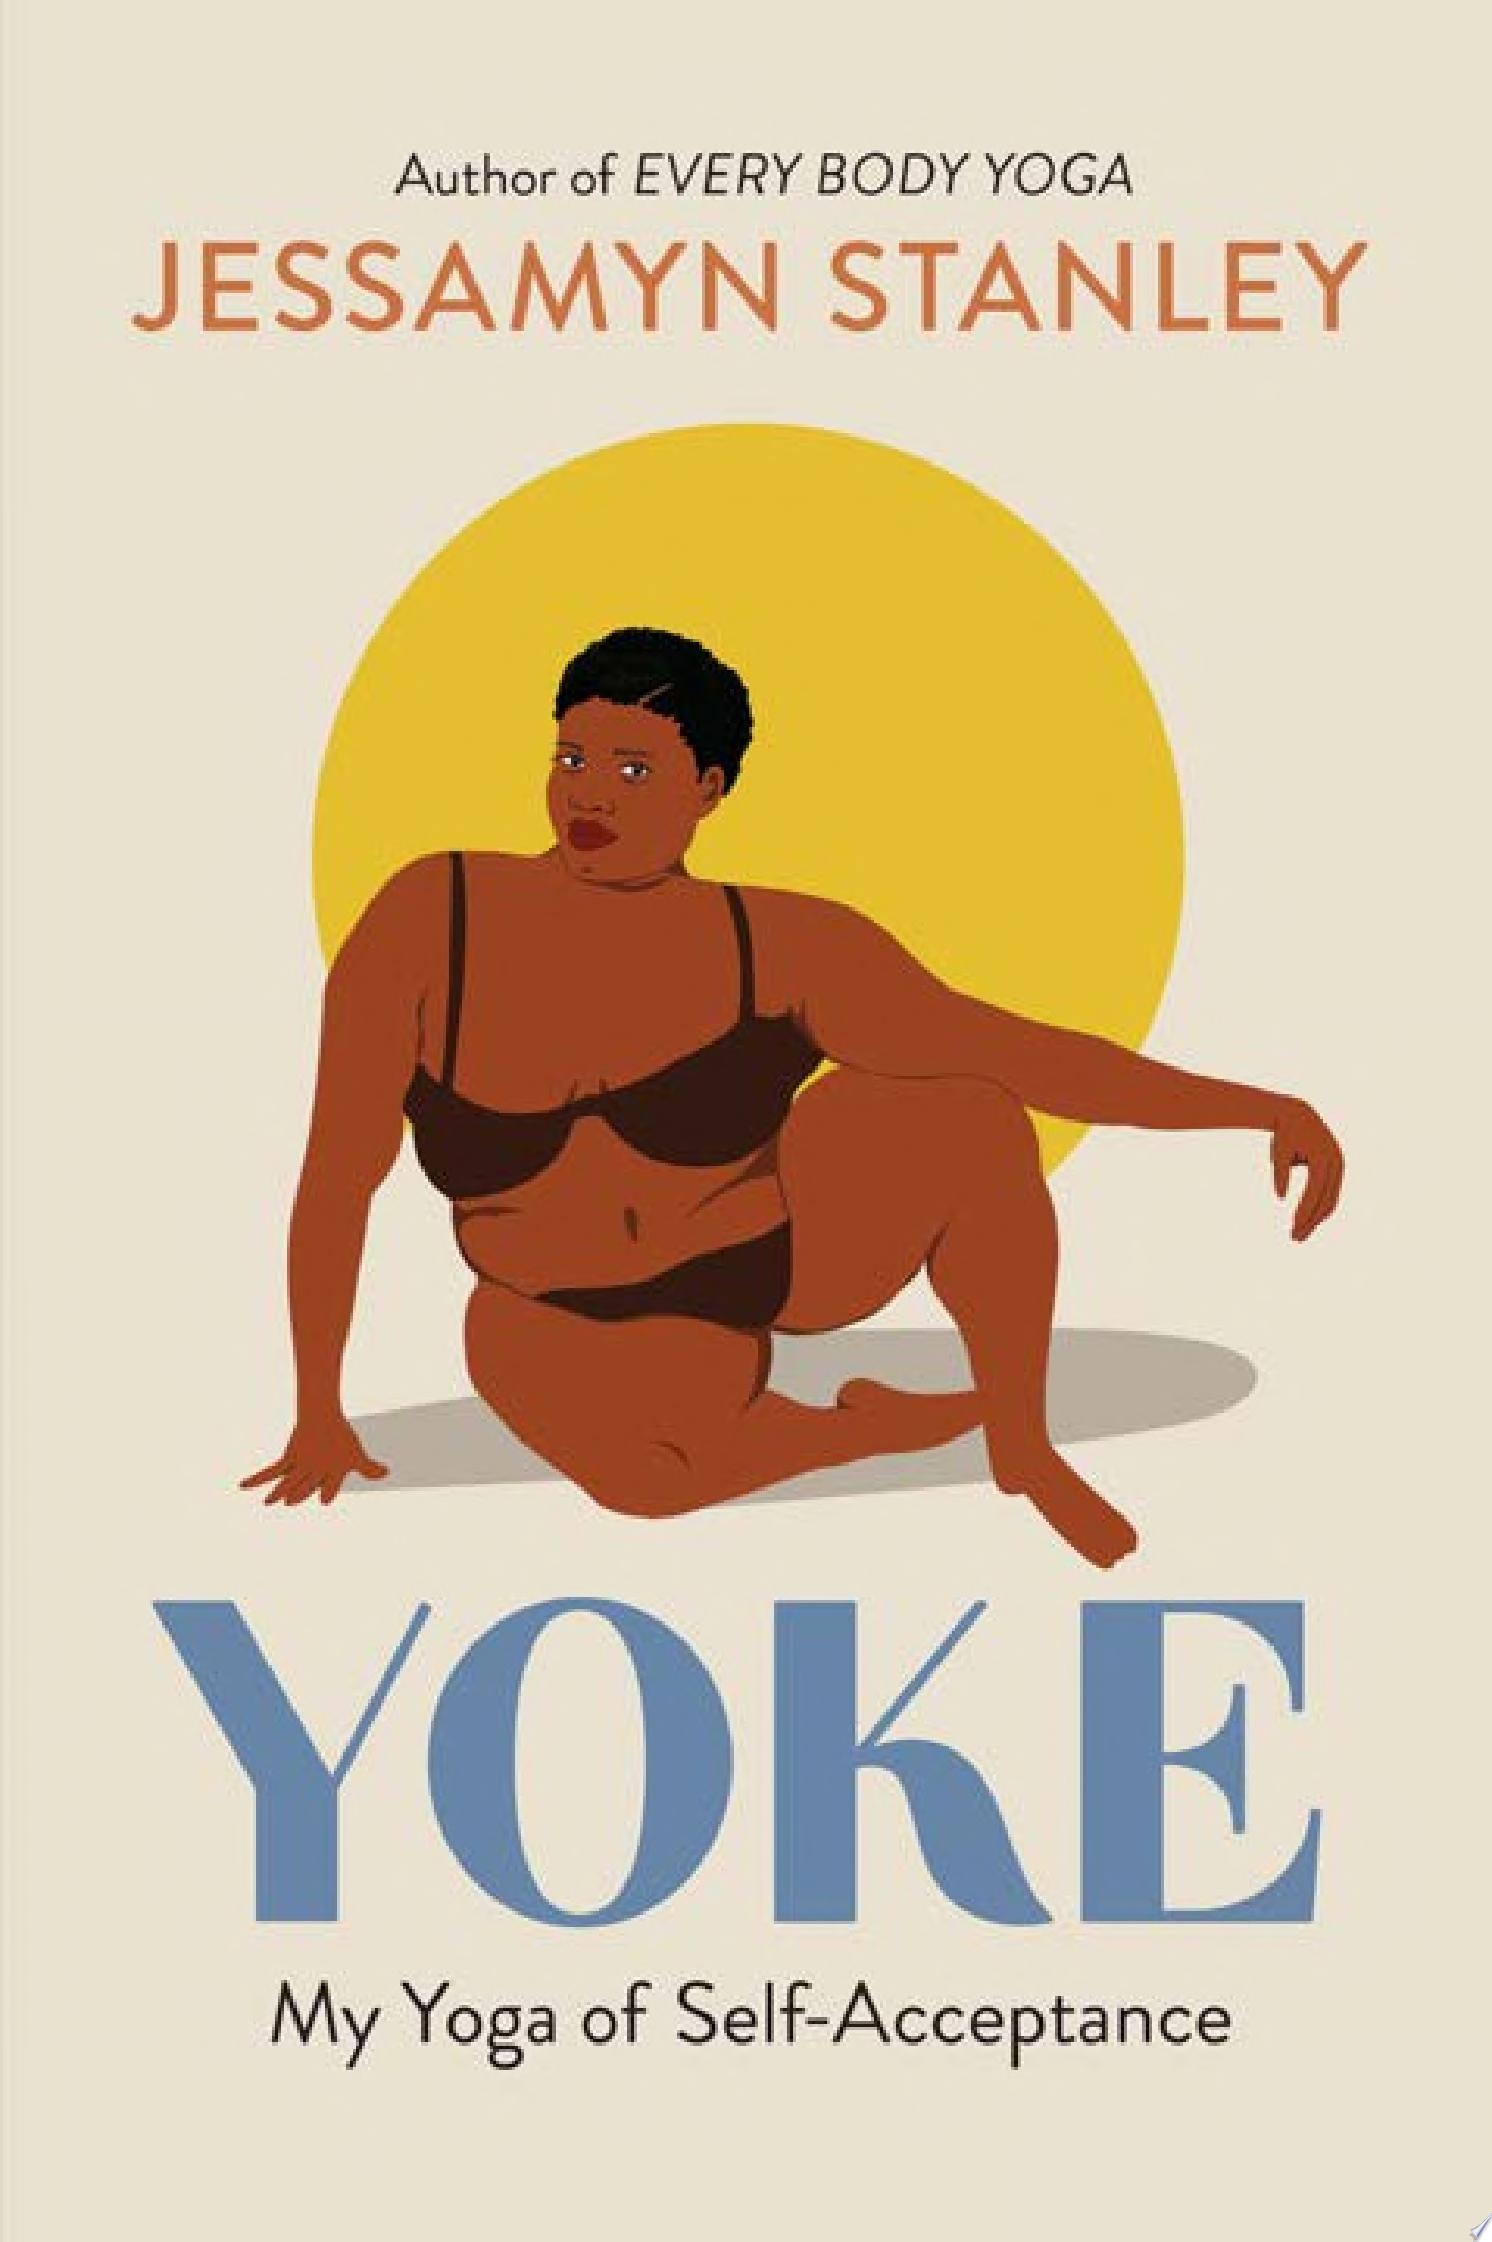 Image for "Yoke"